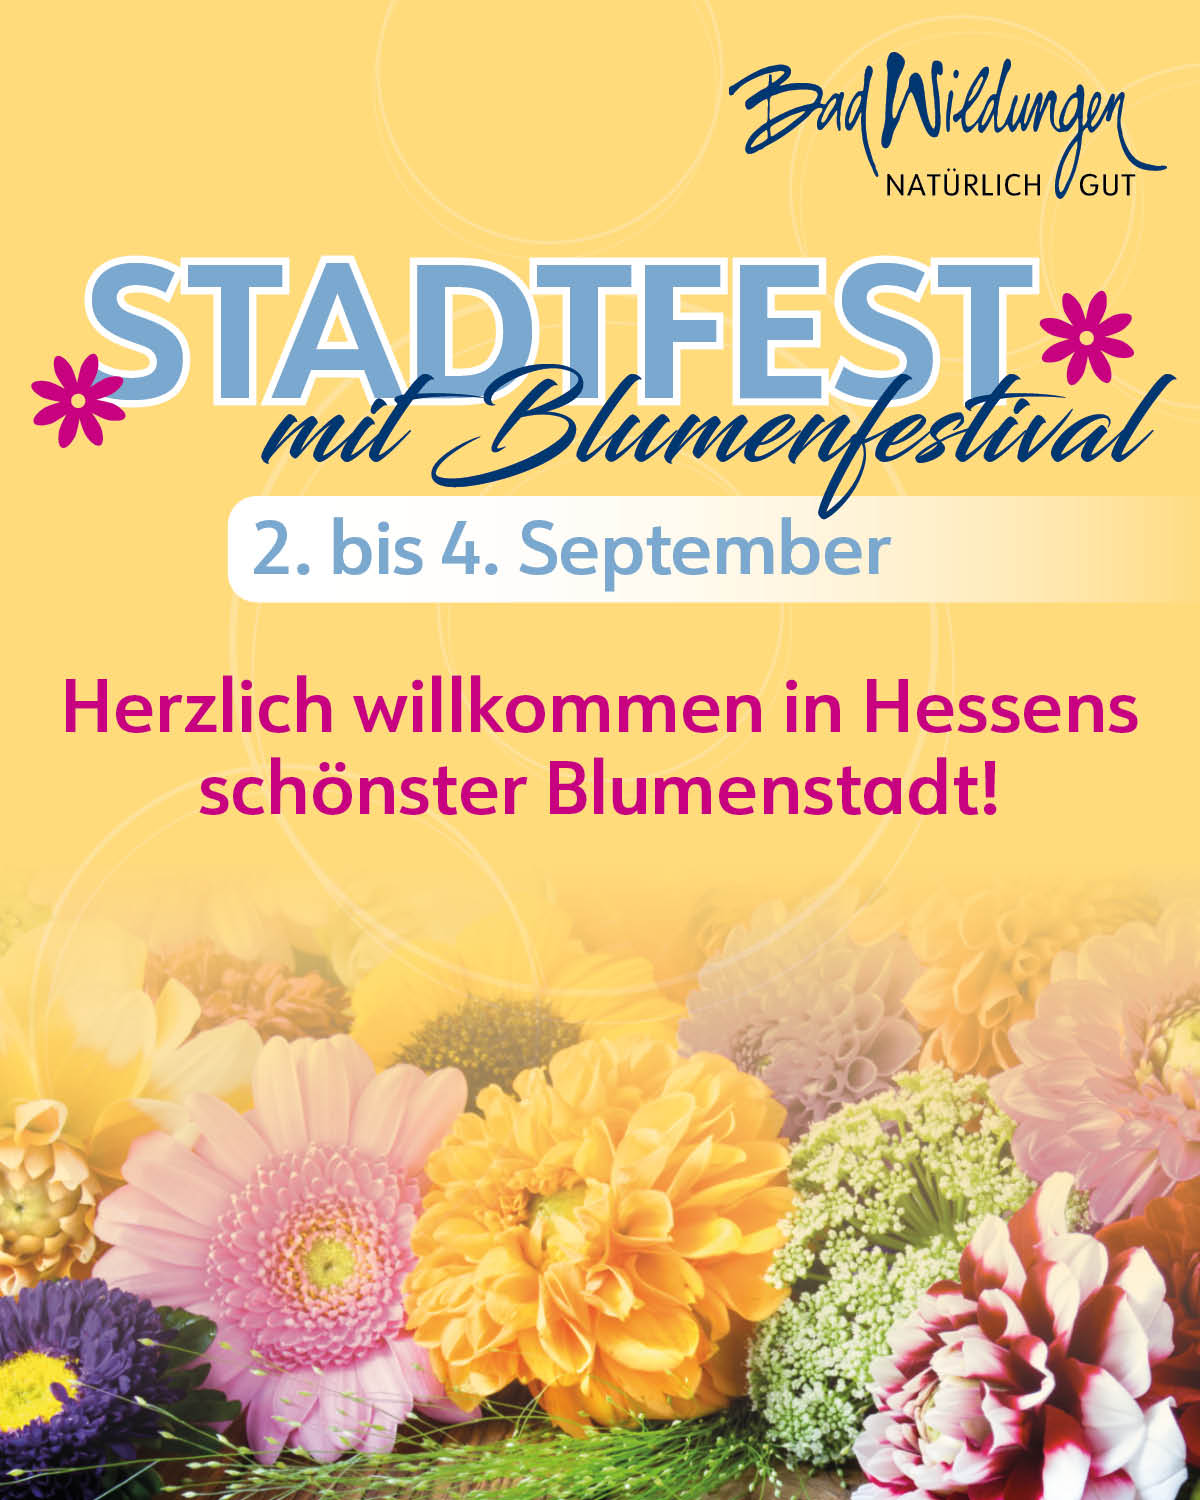 Bad Wildunger Stadtfest mit Blumenfestival